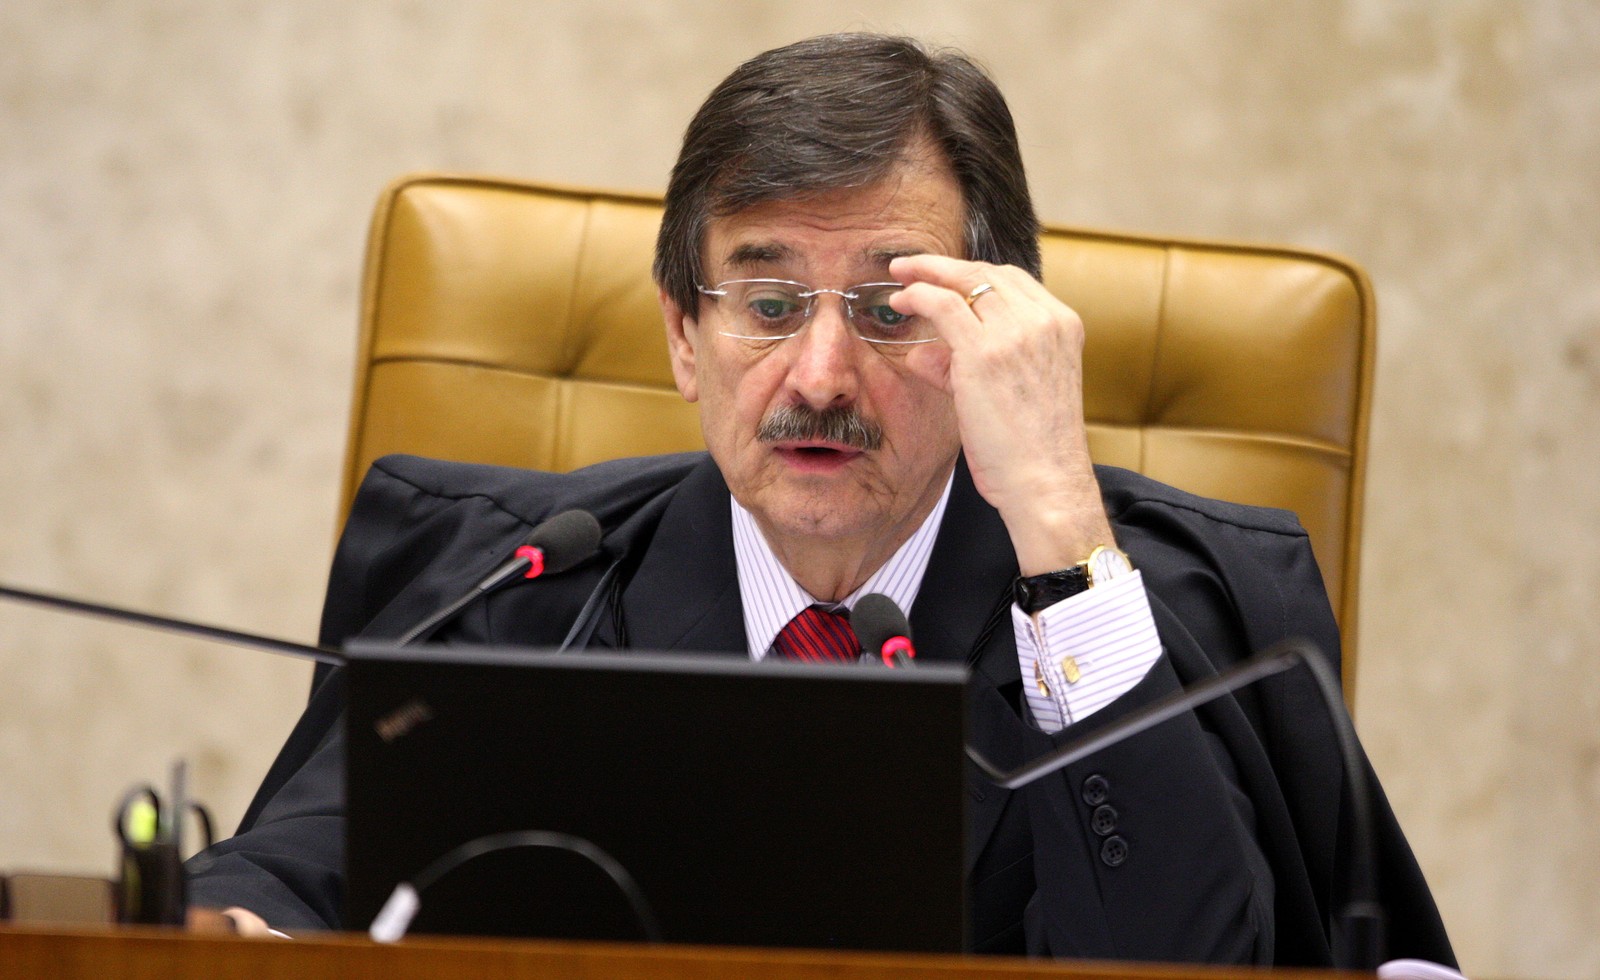 Cezar Peluso presidiu a Suprema Corte de 2010 a 2012Agência O Globo